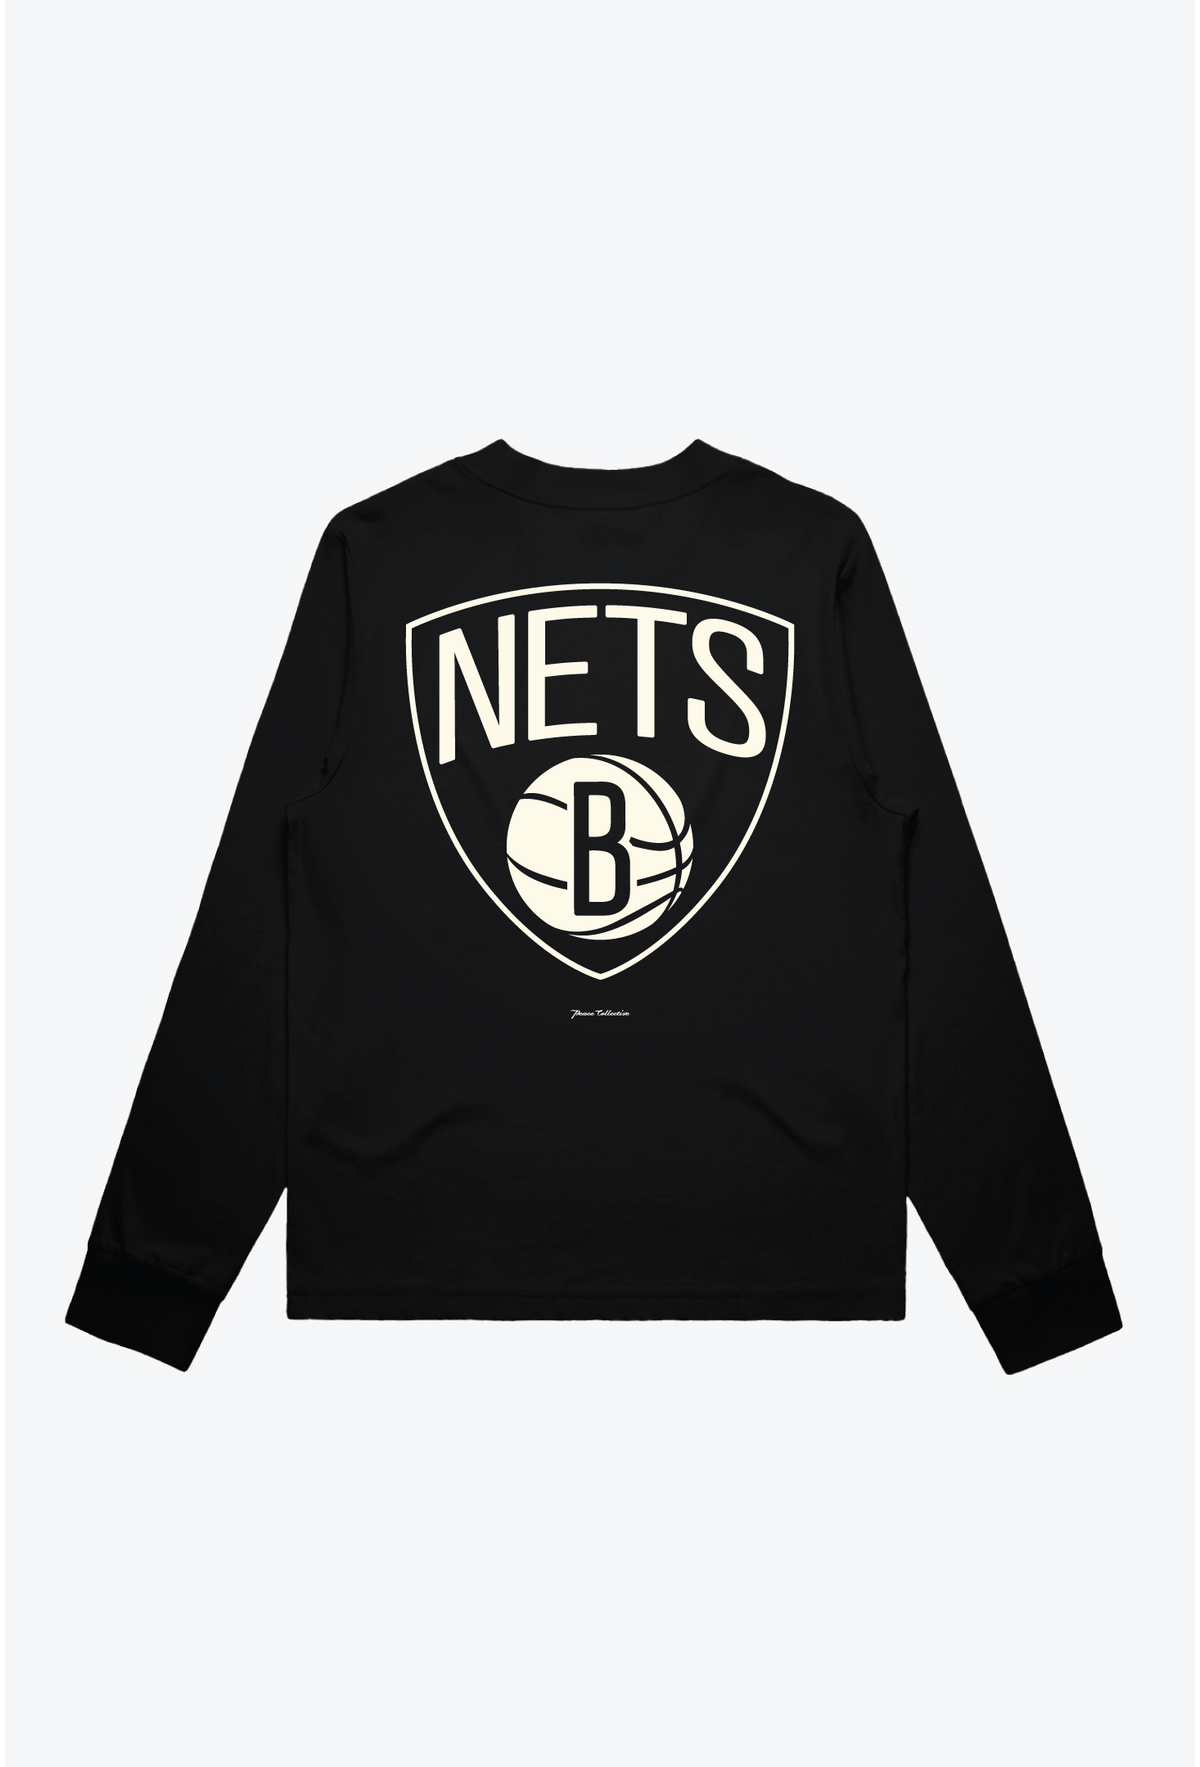 Brooklyn Nets Women's Mock Long Sleeve - Black